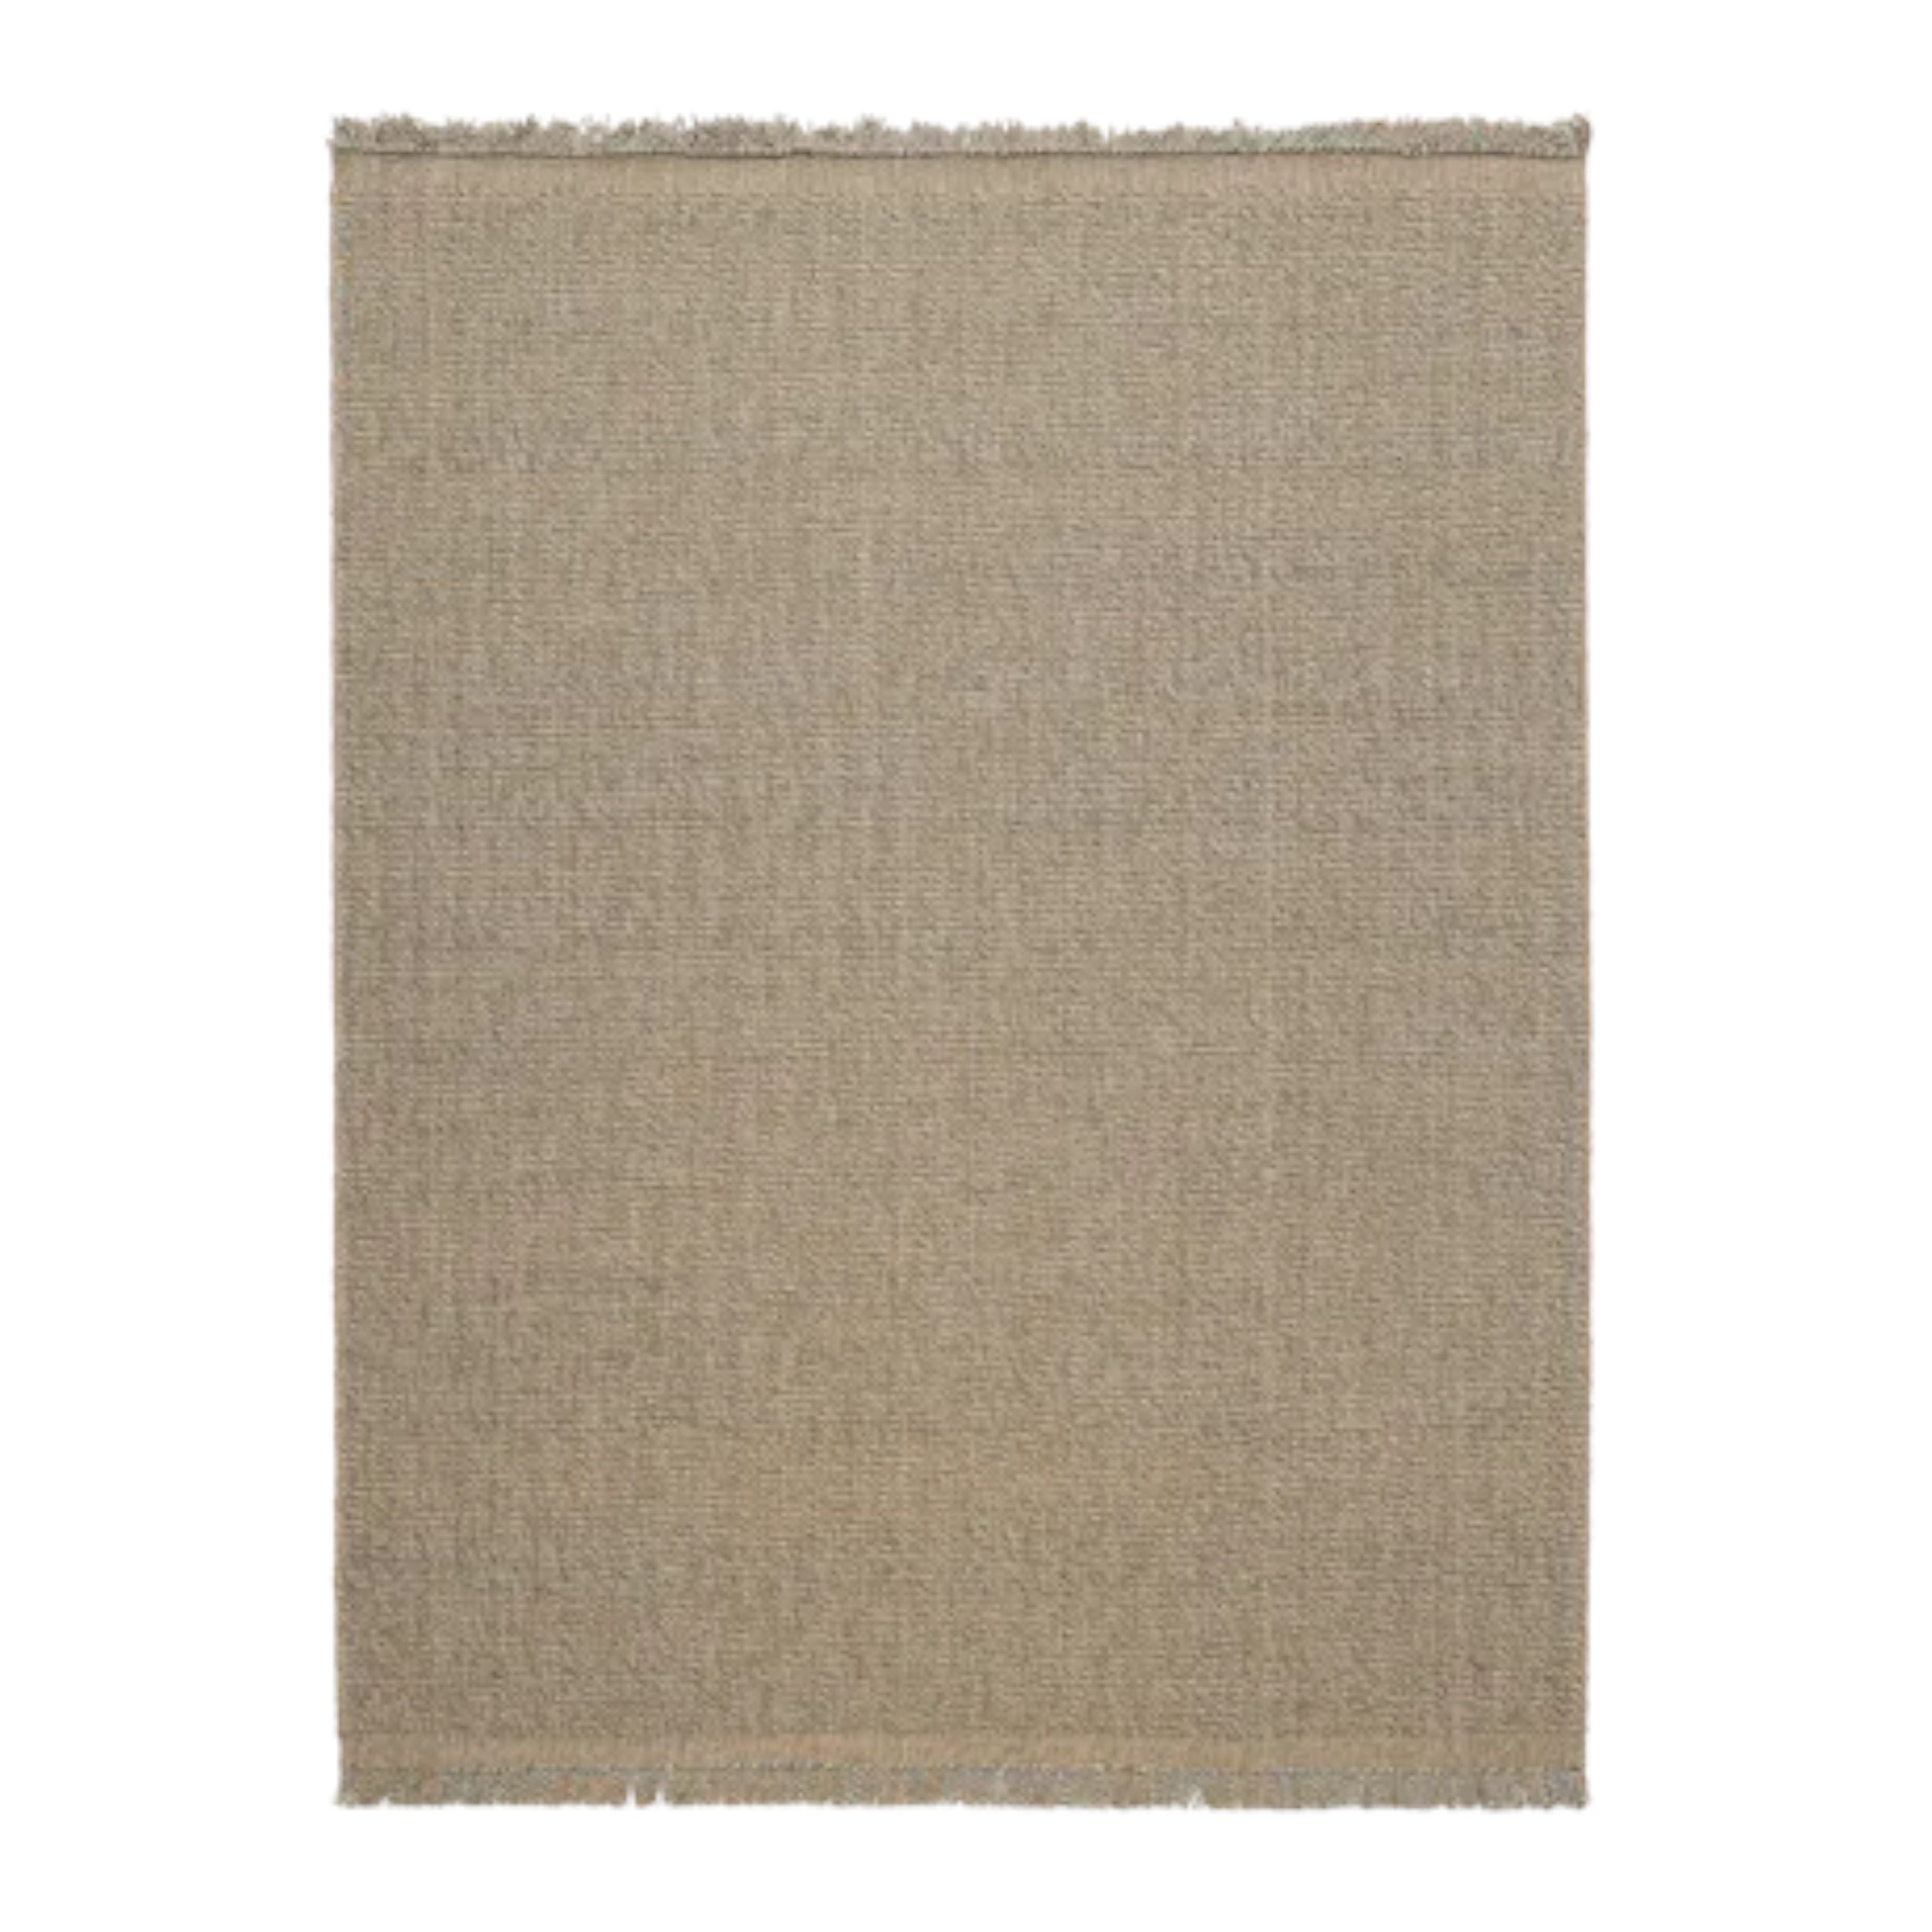 Teppich Jute and Wool von Kvadrat in beige
Freisteller 